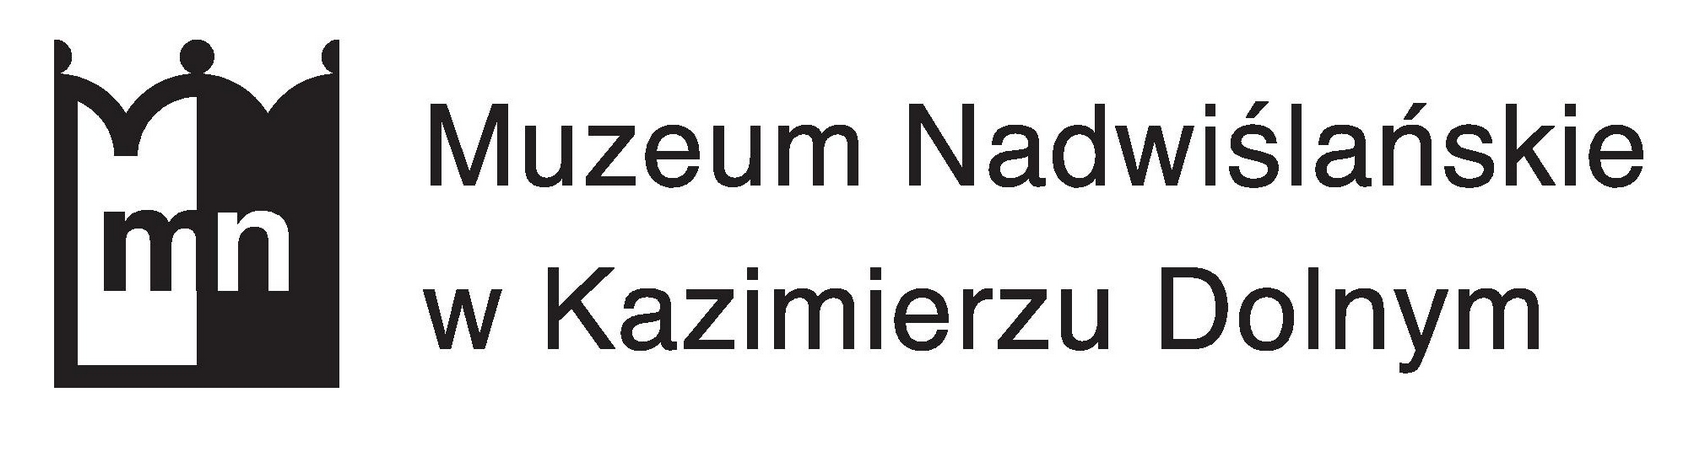 Logo Muzeum Nadwiślańskiego